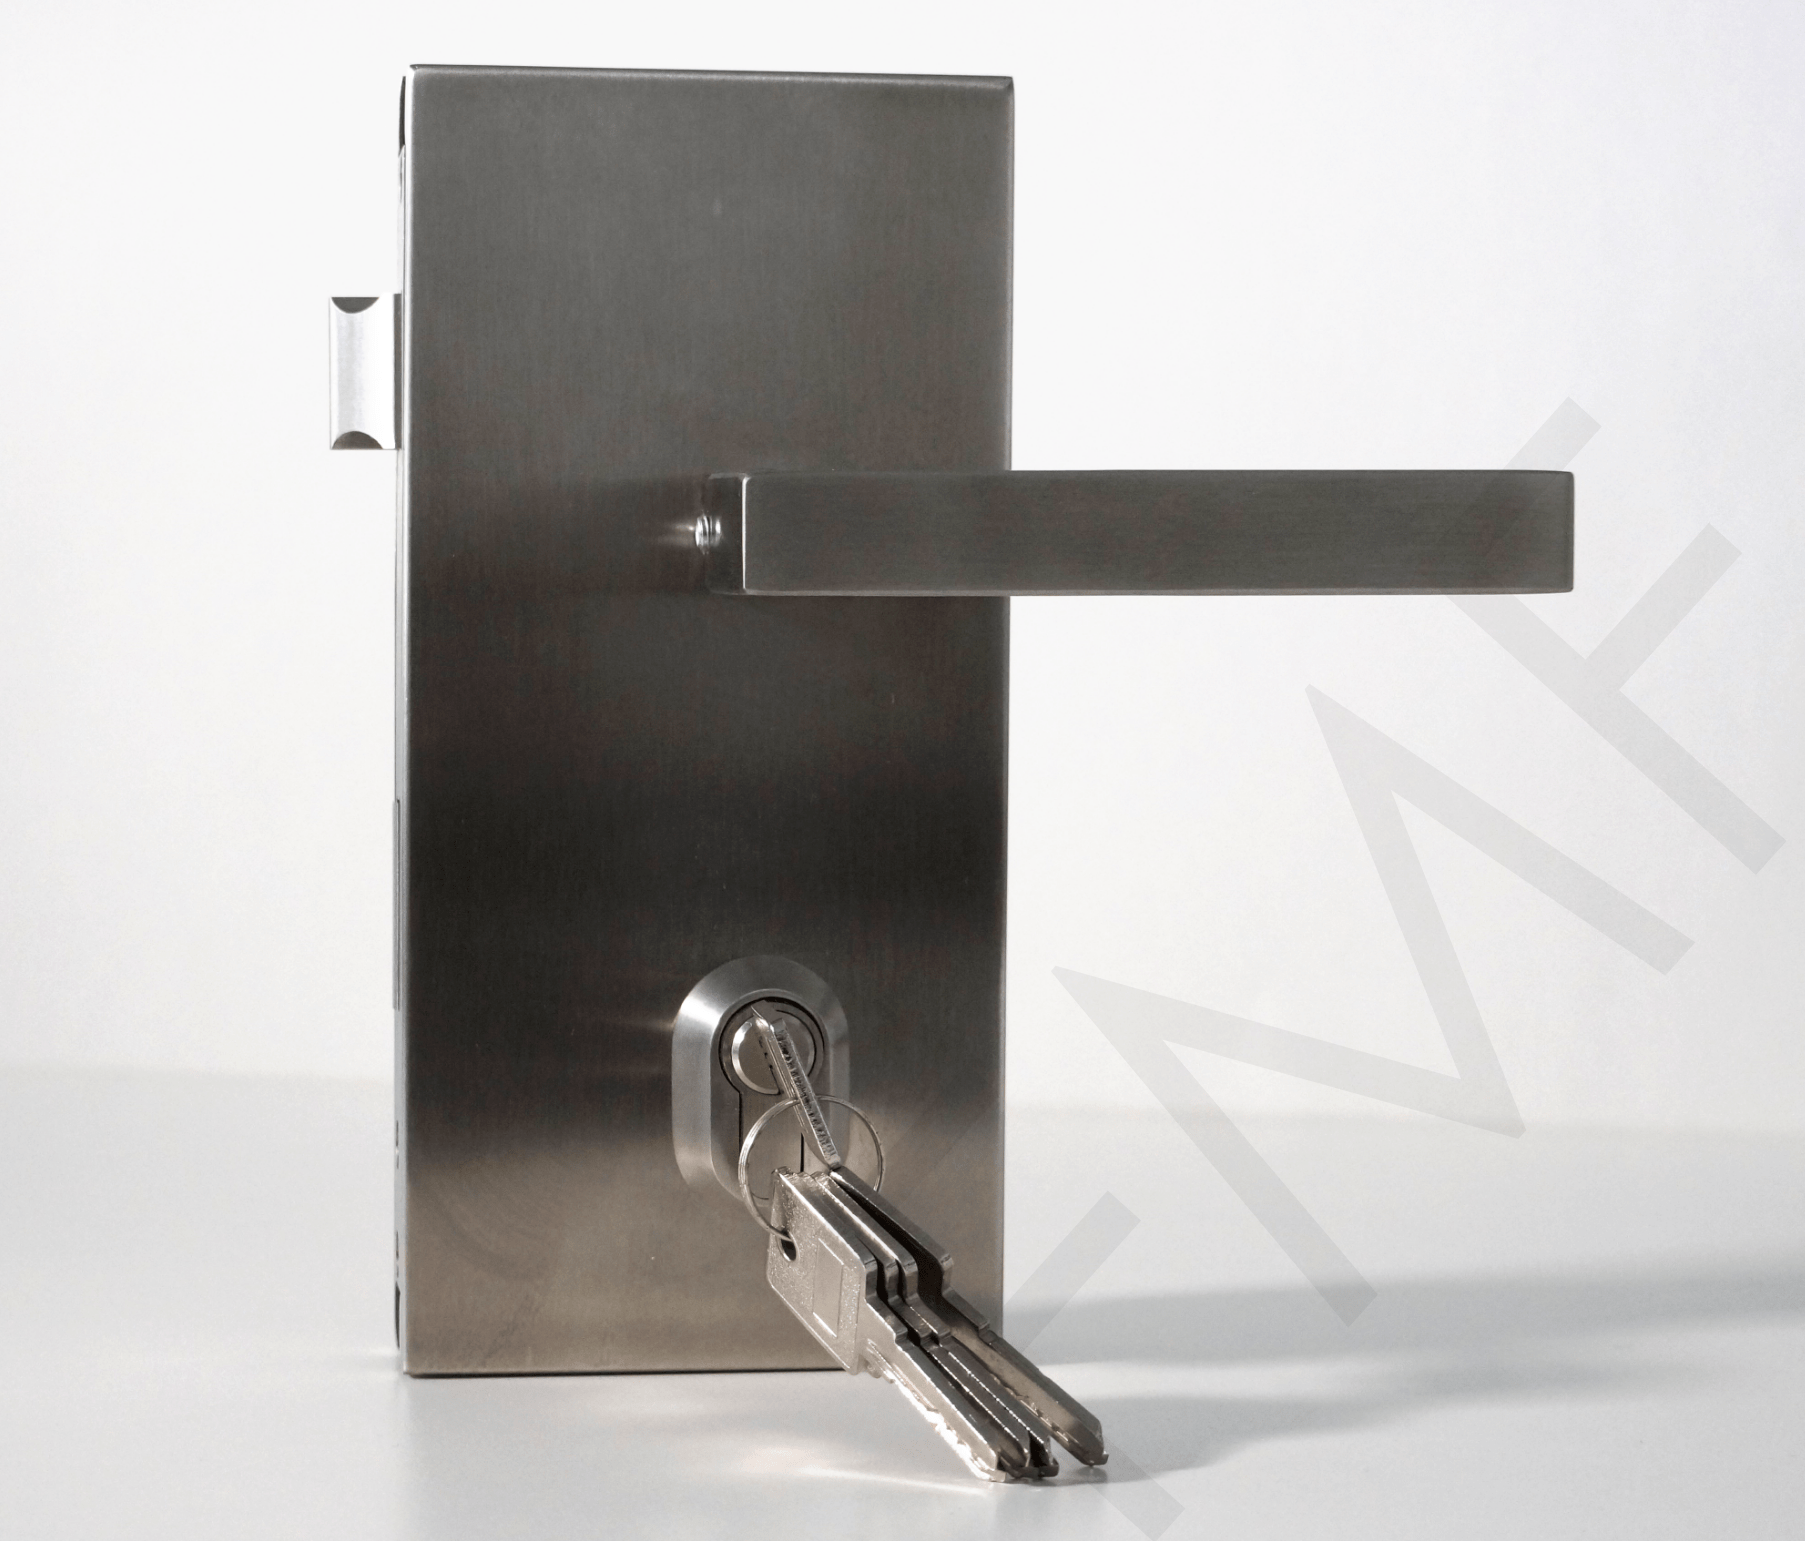 200 Series Glass-Wall Door Lock